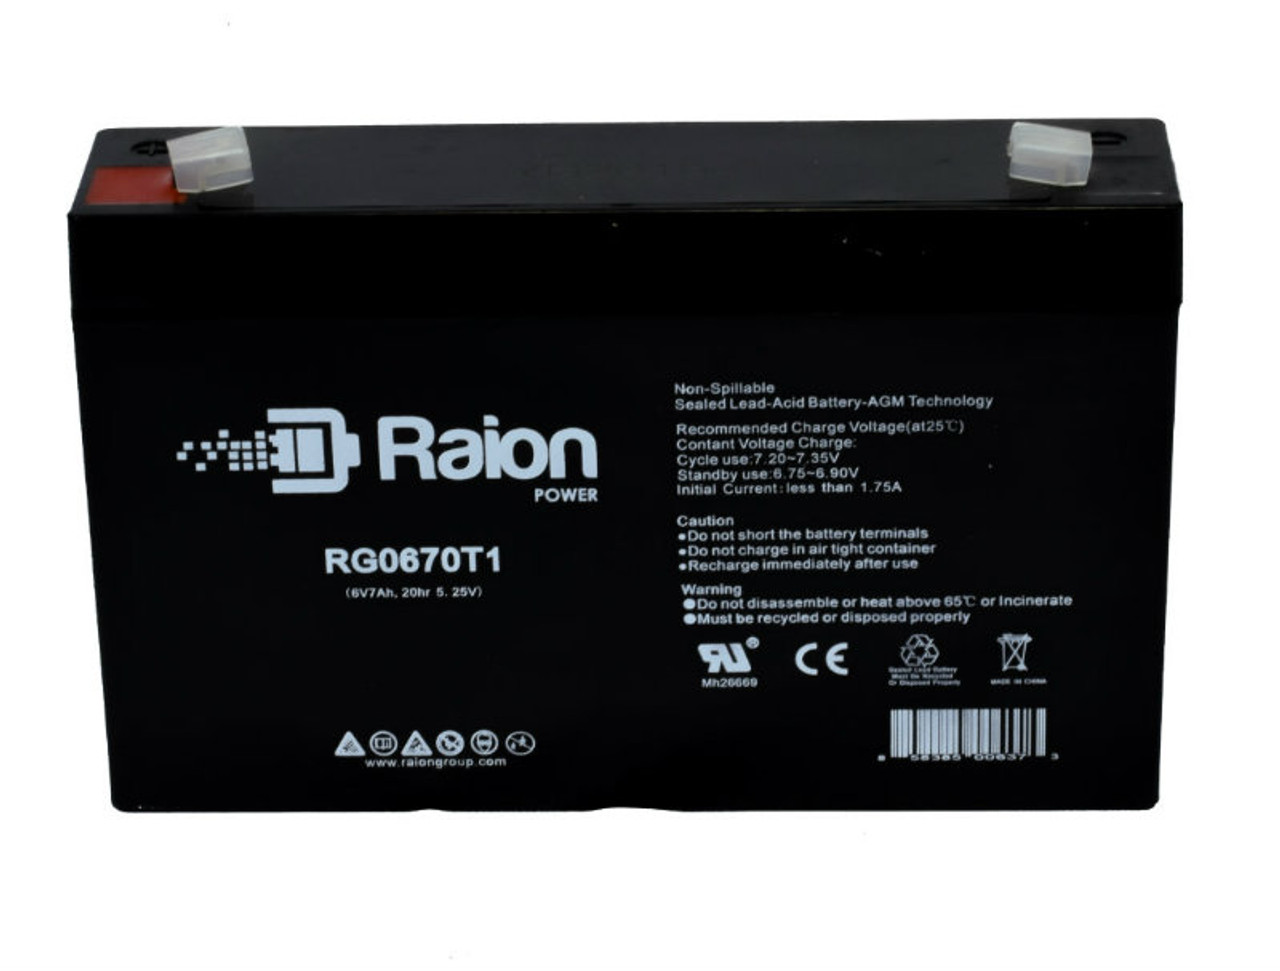 Raion Power RG0670T1 SLA Battery for RYTON RT665 OEM Battery